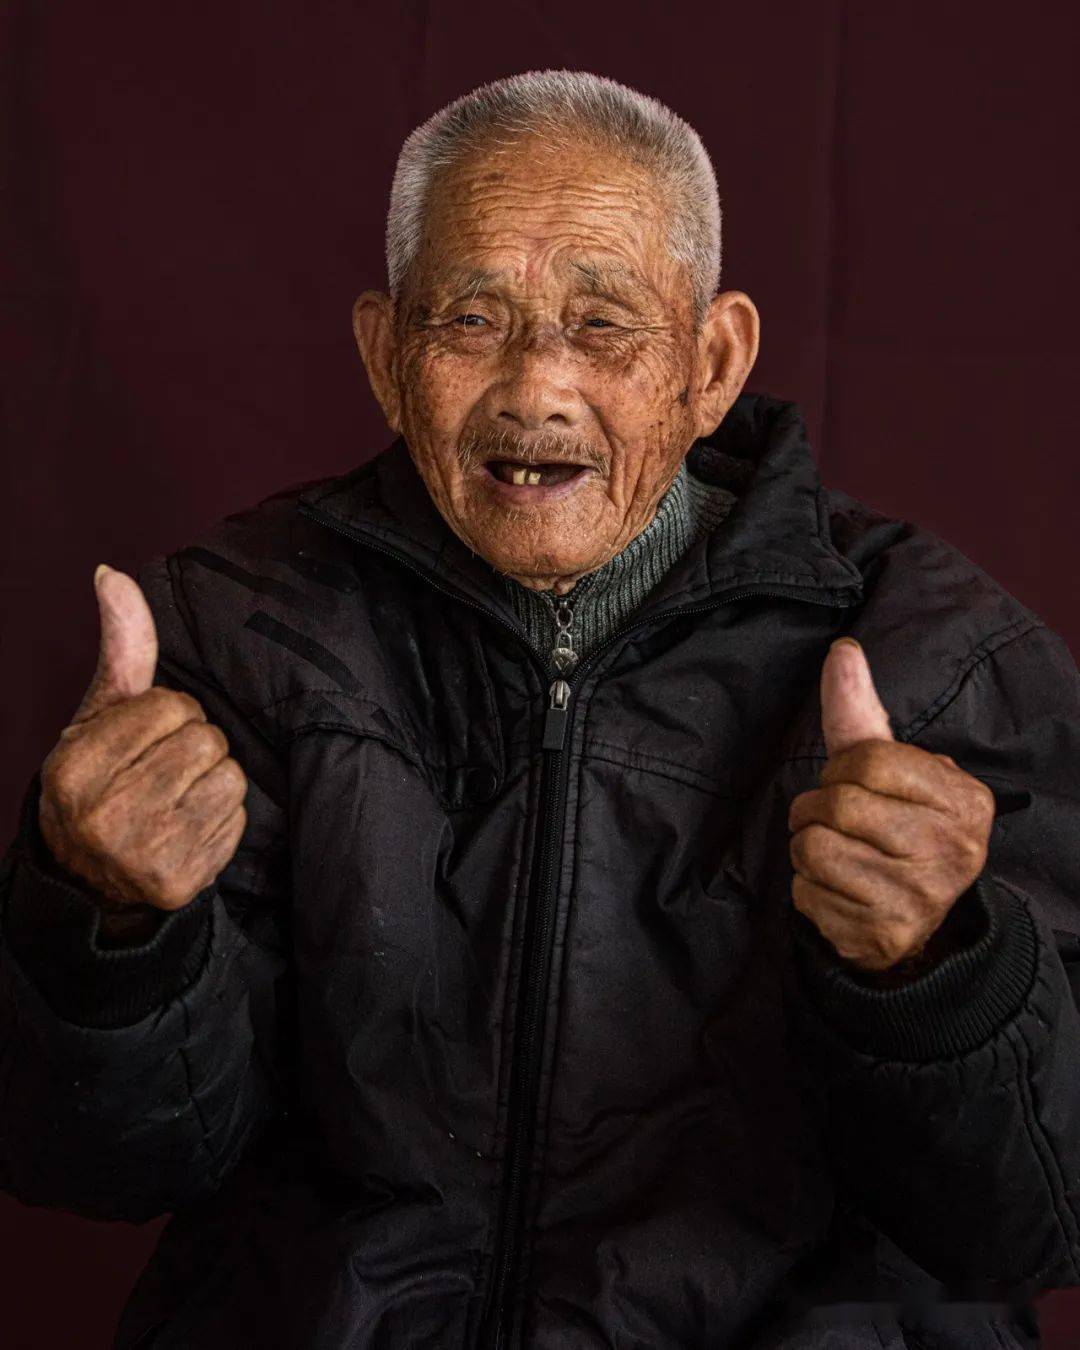 100岁老人照片一百岁图片